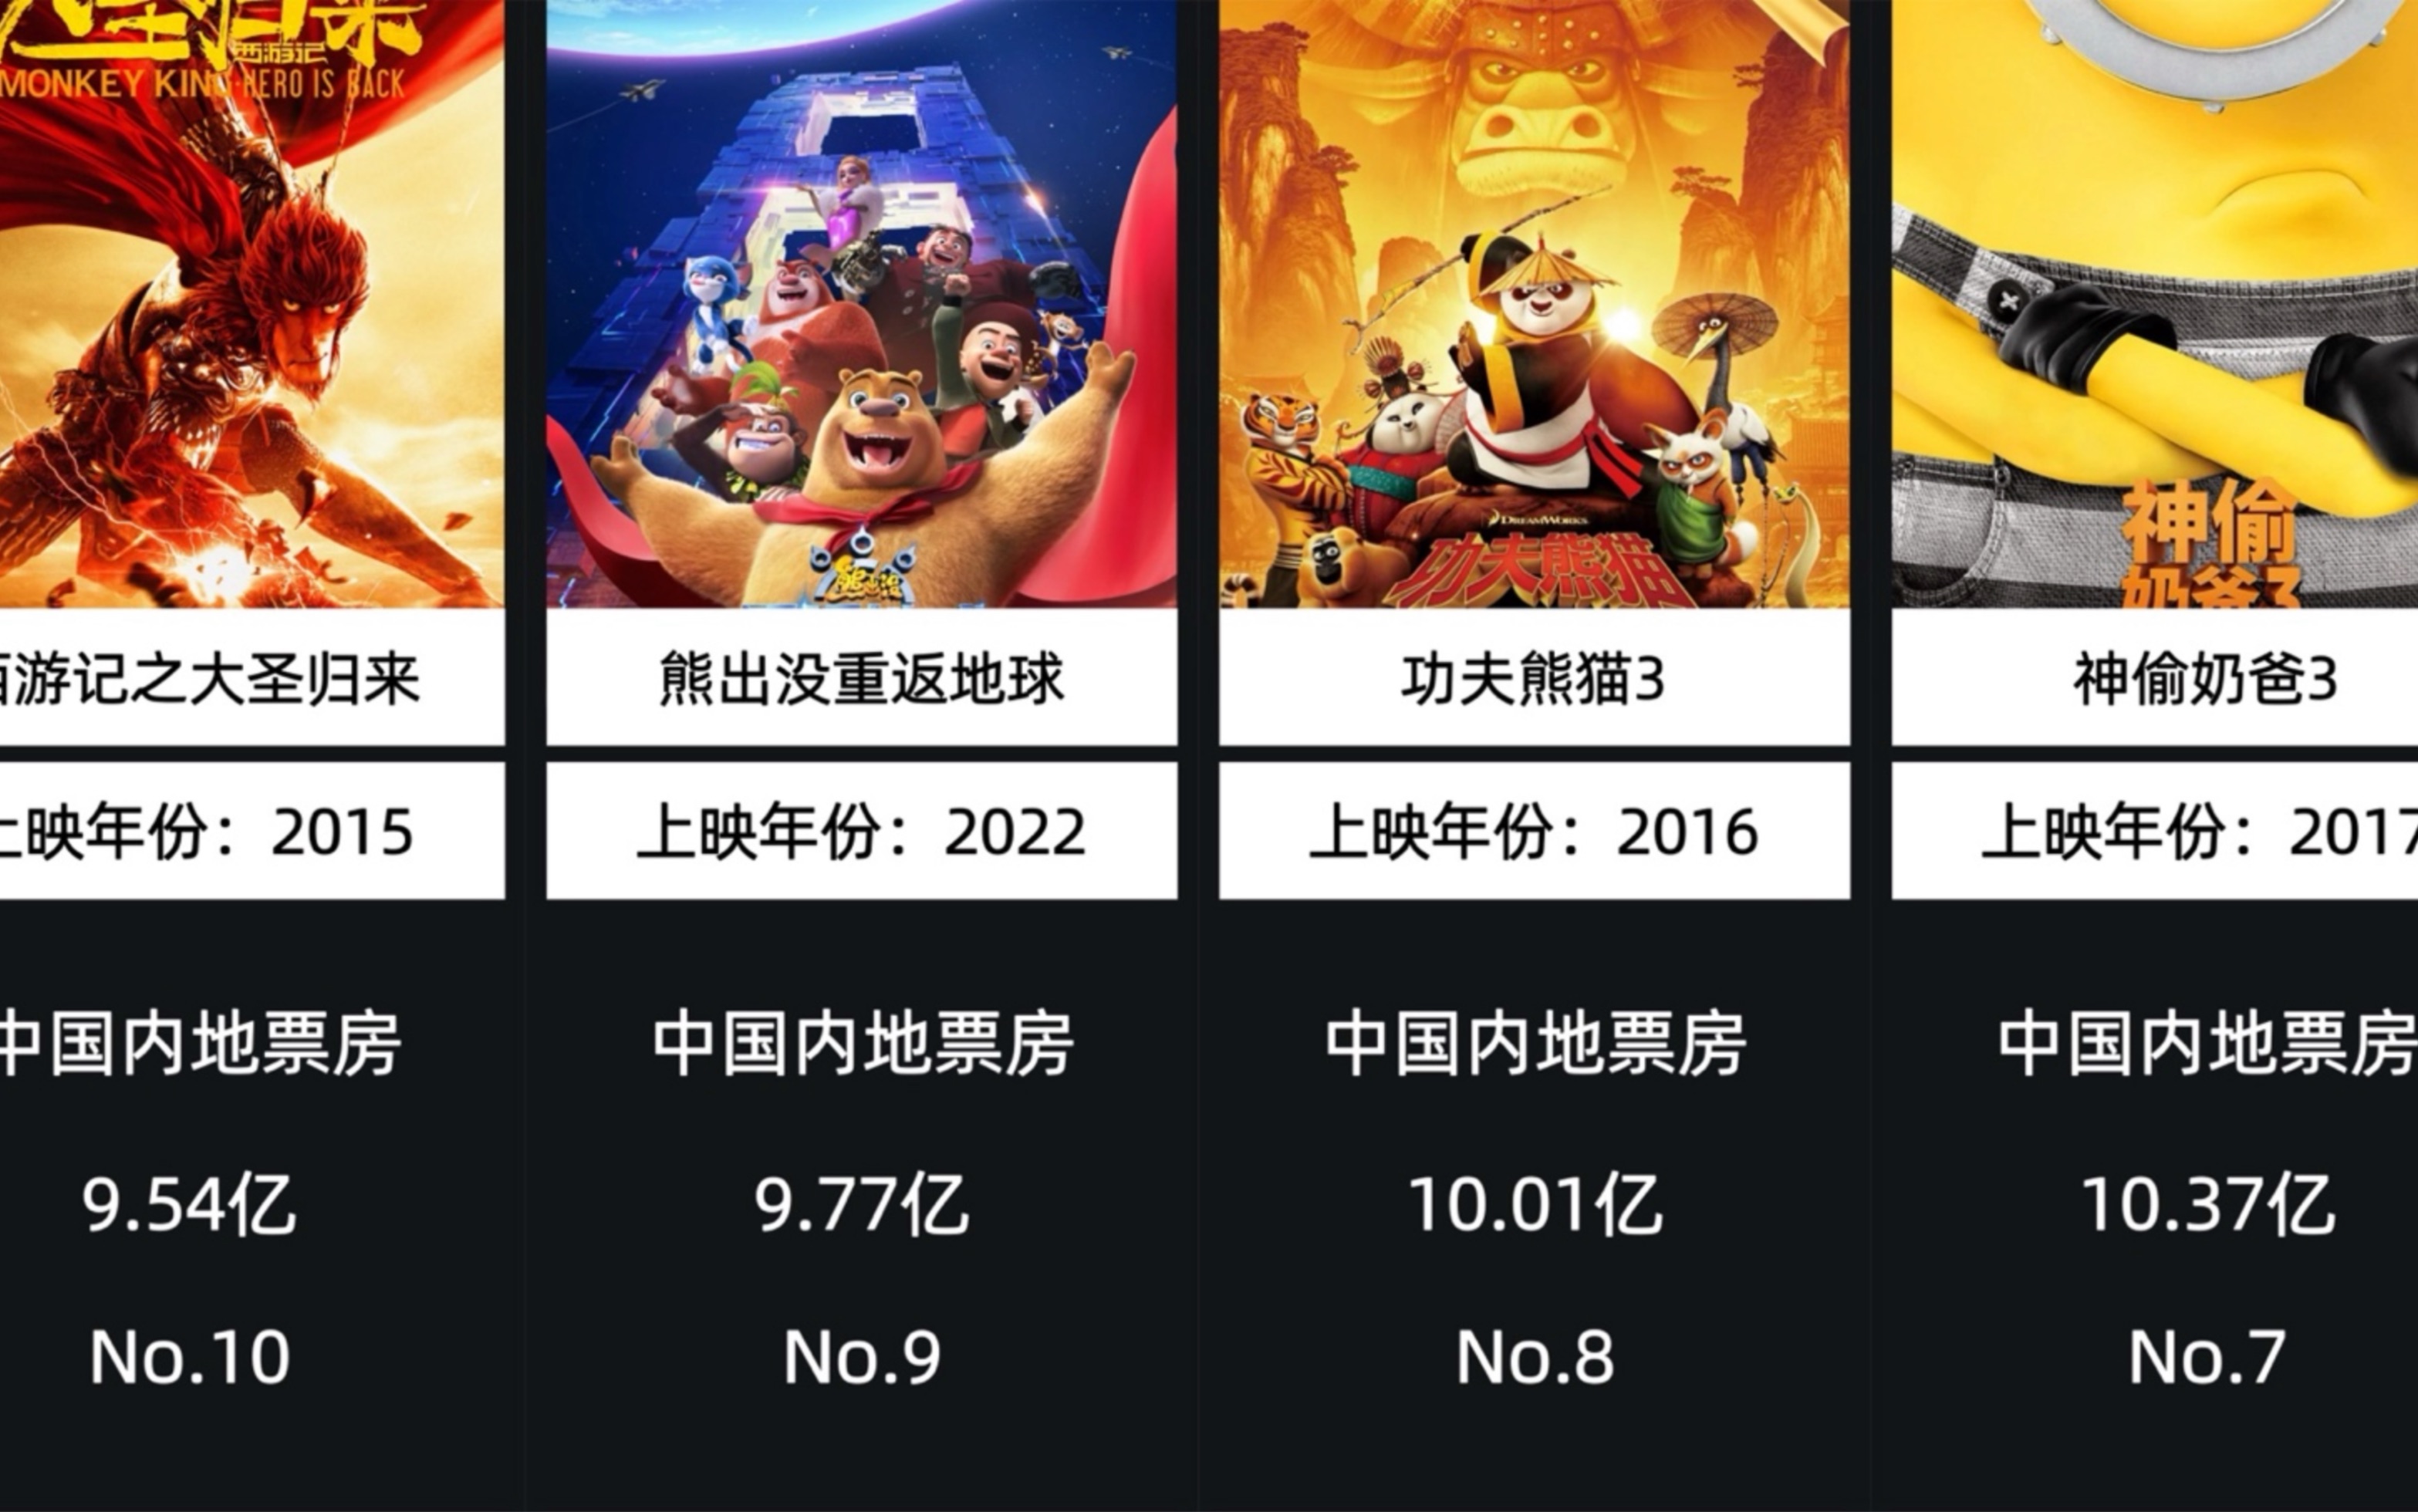 中国影史动画电影票房排行榜TOP10